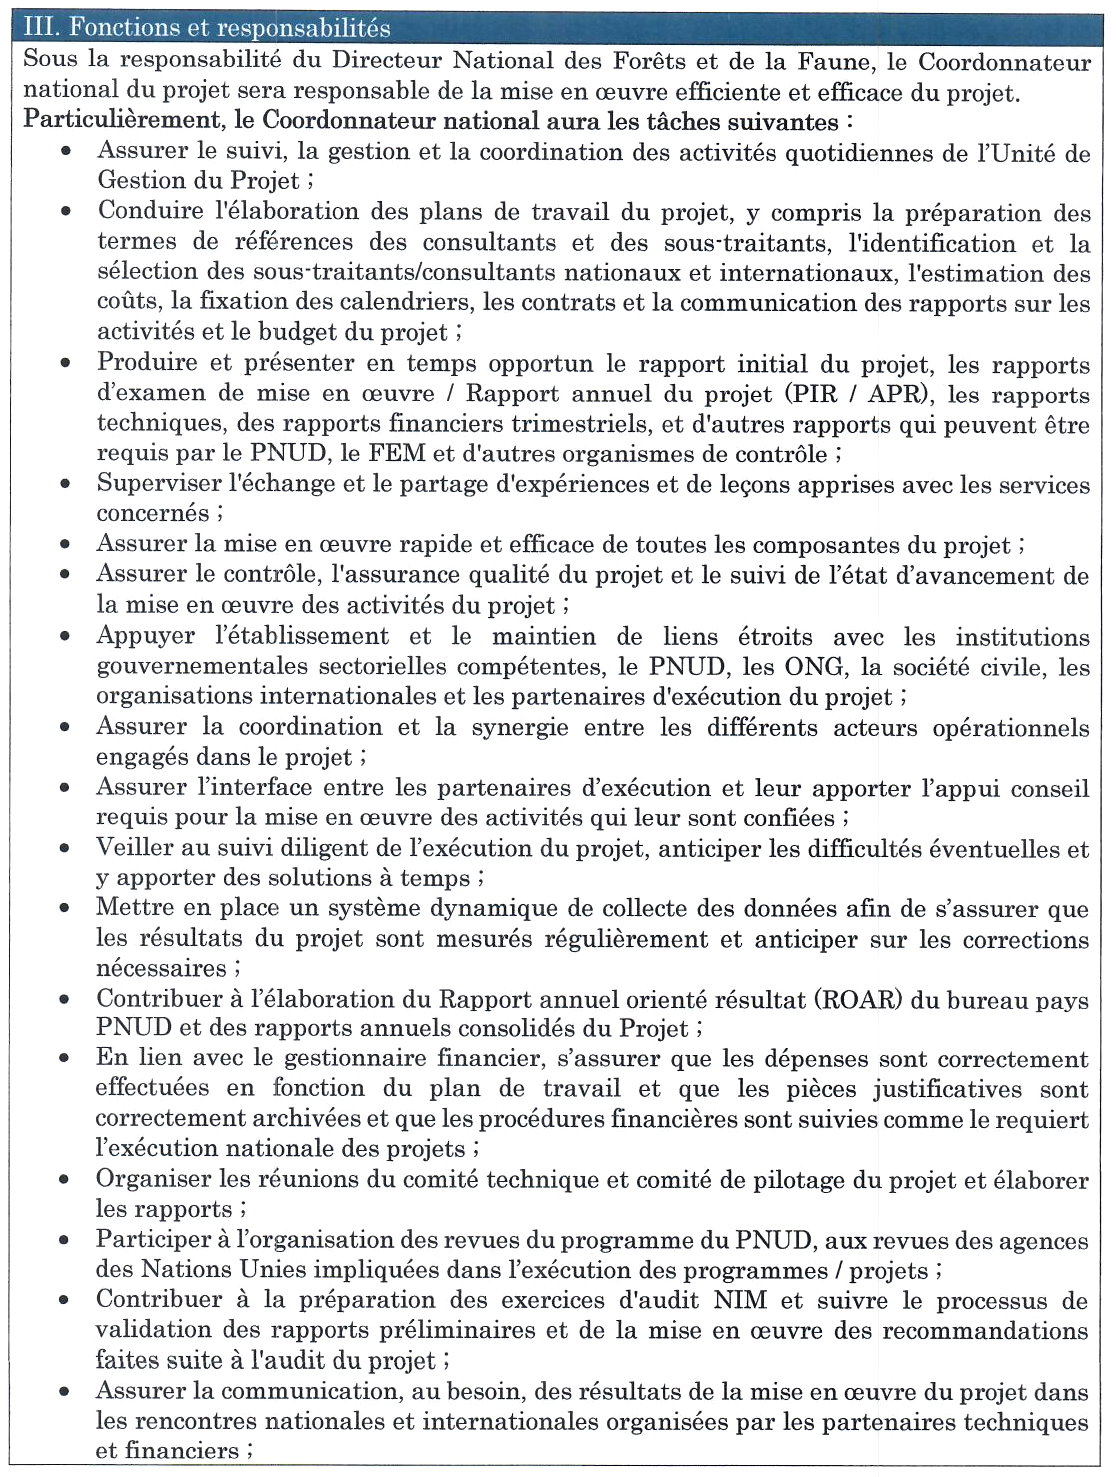  Avis de Recrutement D'un Coordonnateur National du projet « Renforcement de la résilience et de capacités d'adaptation des communautés les plus vulnérables au changement climatique en Guinée Forestière » | Page 2